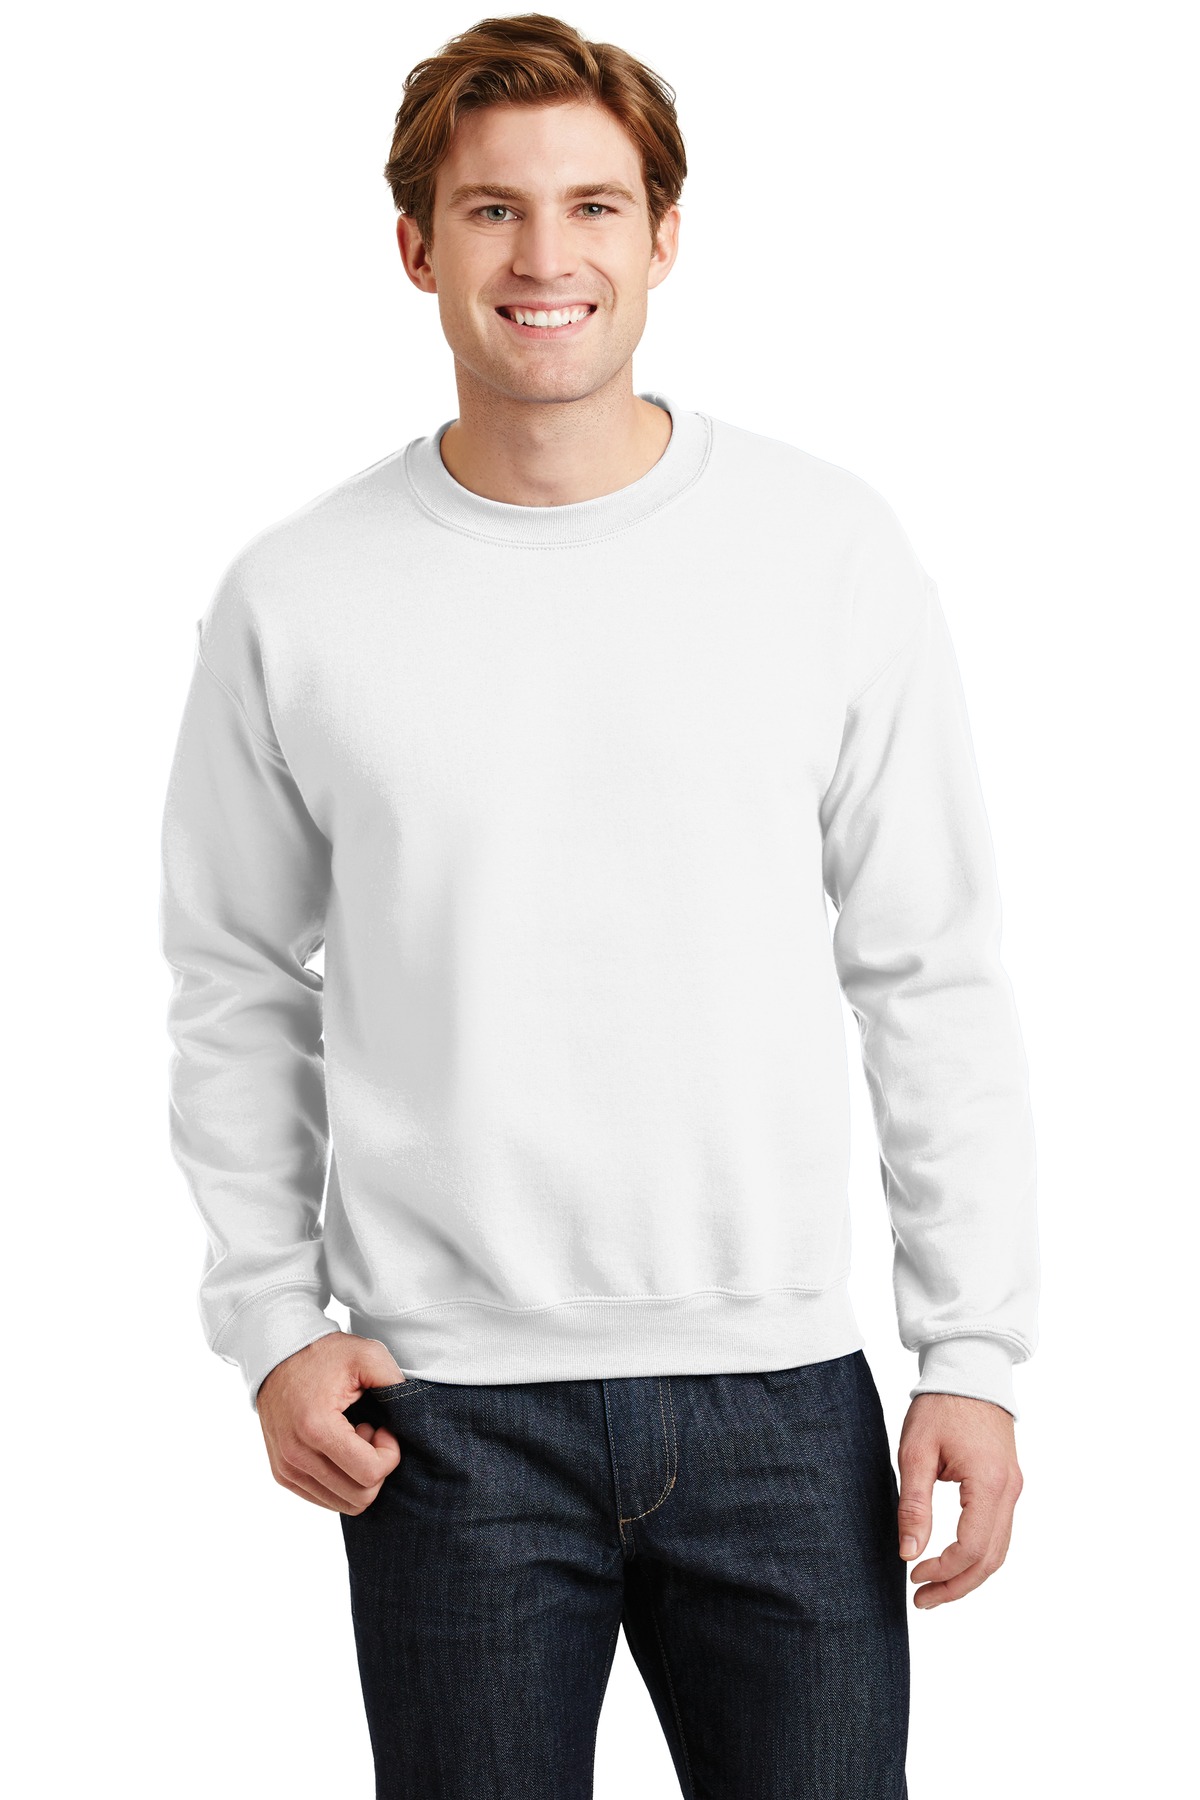 https://images.shirtspace.com/fullsize/AvOmy%2FPTVBvga0ozIsP%2FxA%3D%3D/58848/1213-gildan-g180-heavy-blend-crewneck-sweatshirt-front-white.jpg